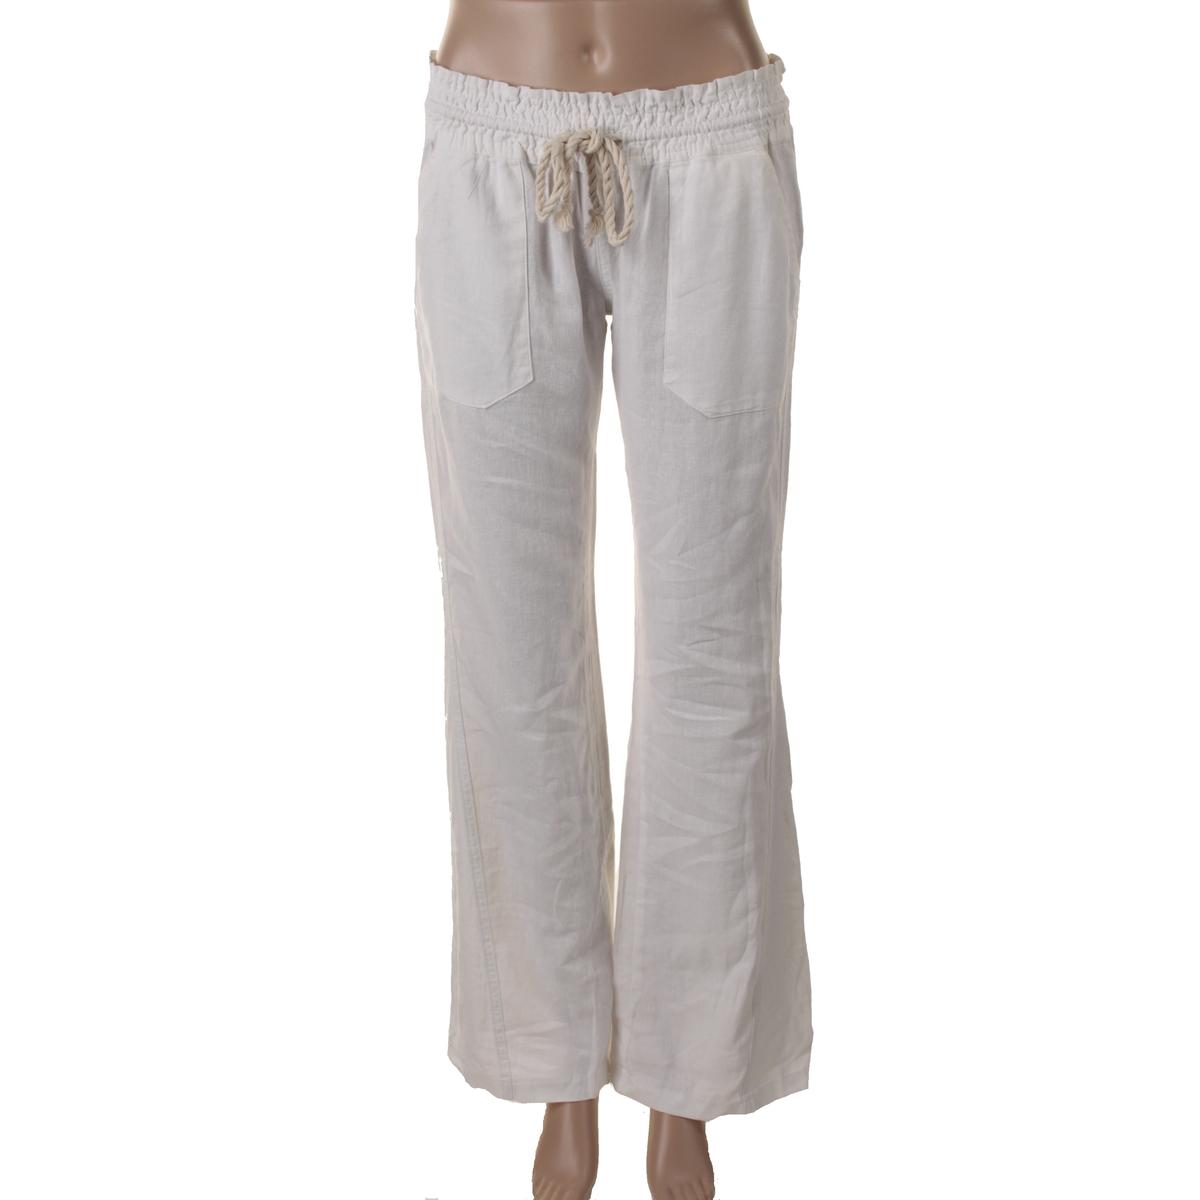 Roxy Womens Oceanside White Linen Wide Leg Casual Pants S BHFO 8499 | eBay